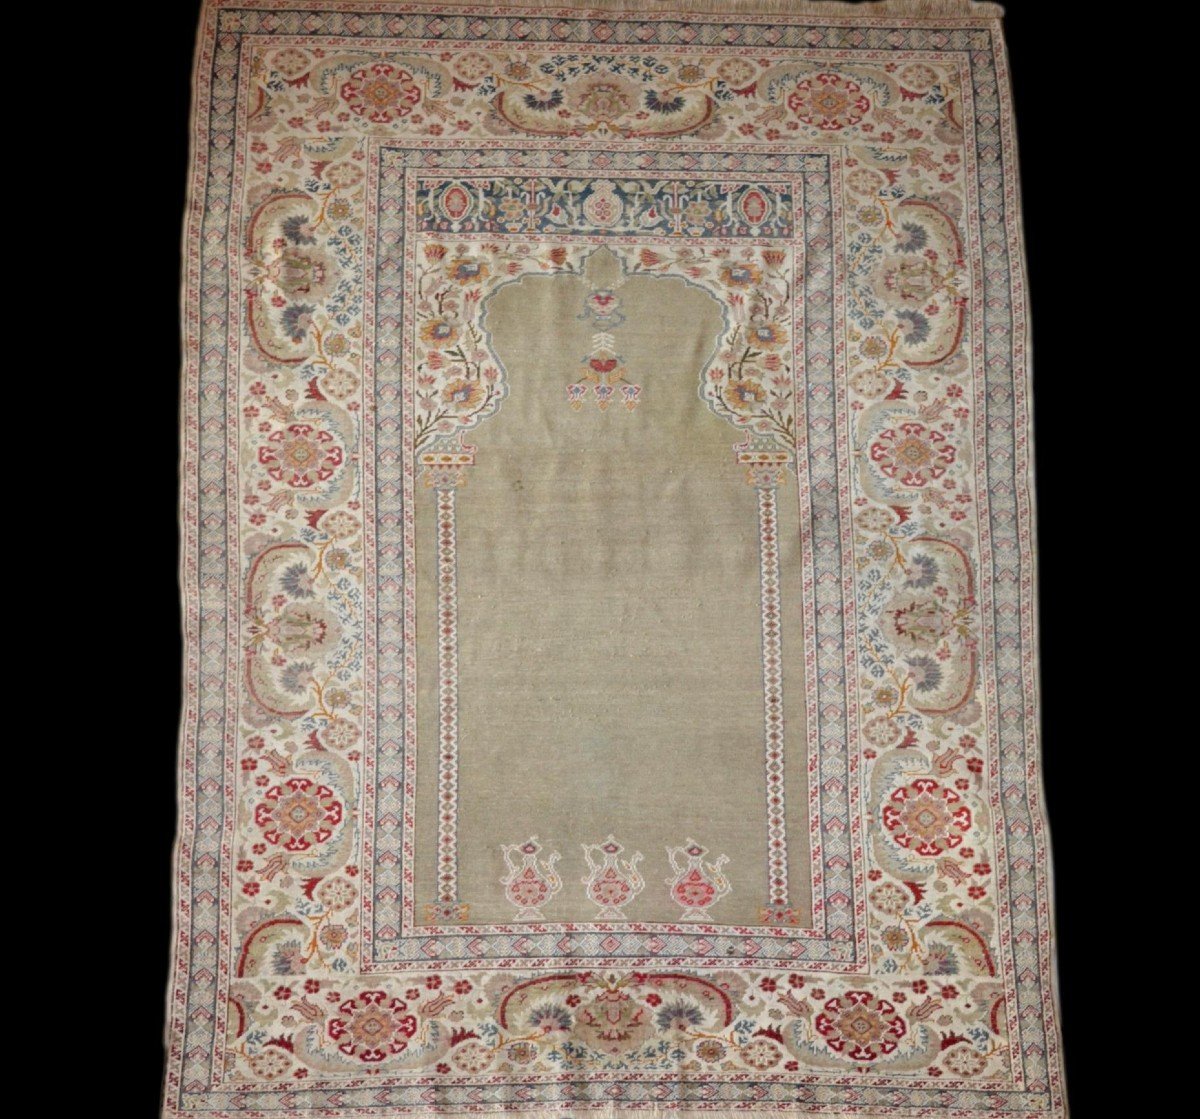 Tapis Istambul ancien de prière, soie et laine, 128 cm x 179 cm, Empire Ottoman, début XXème 